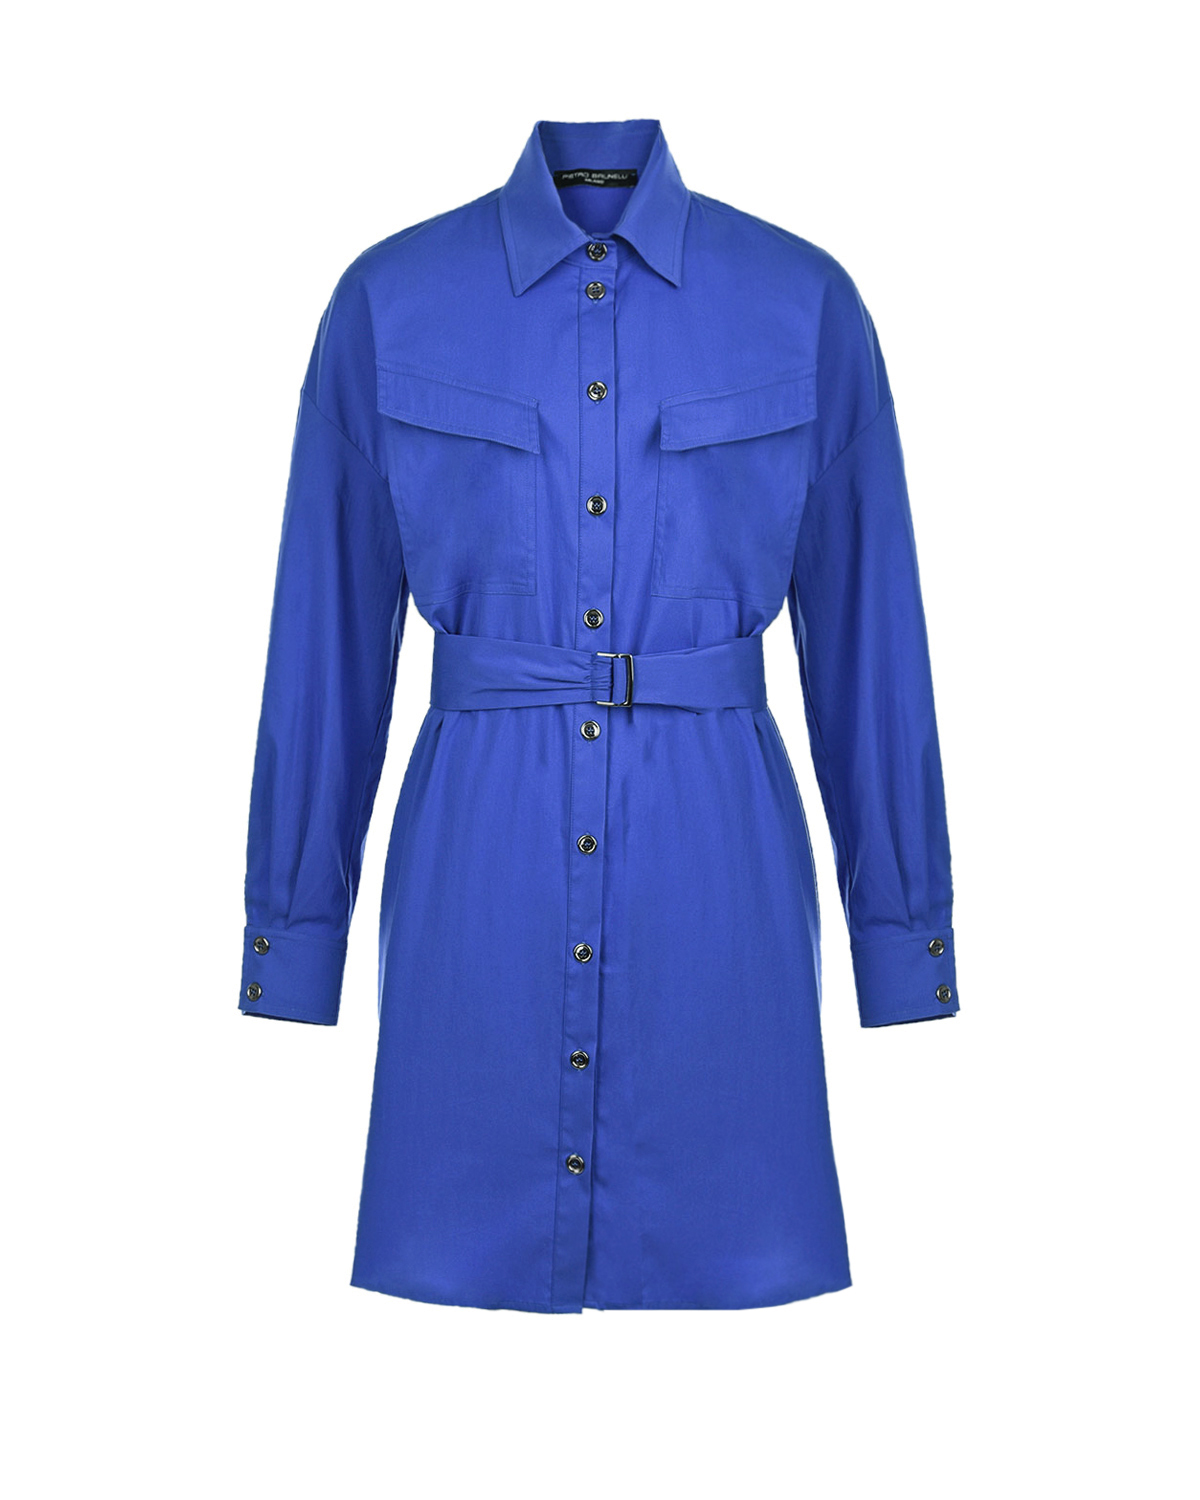 Синее платье-рубашка OLIMPIA Pietro Brunelli, размер 40, цвет синий - фото 1